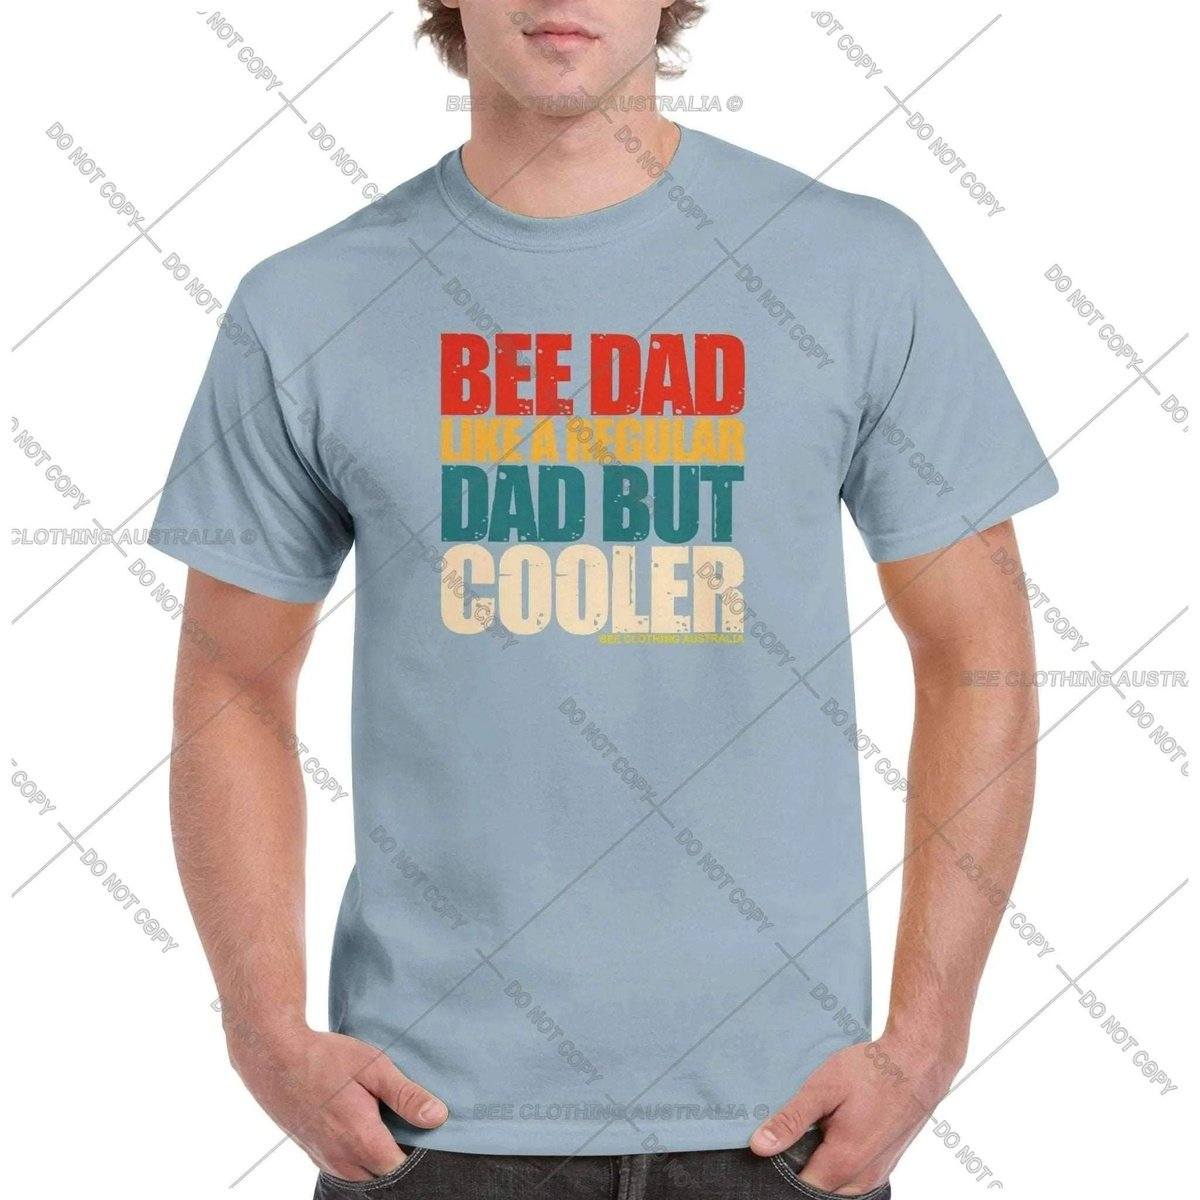 Bee Dad But Cooler VintageT-Shirt Australia Online Color Light Blue / S